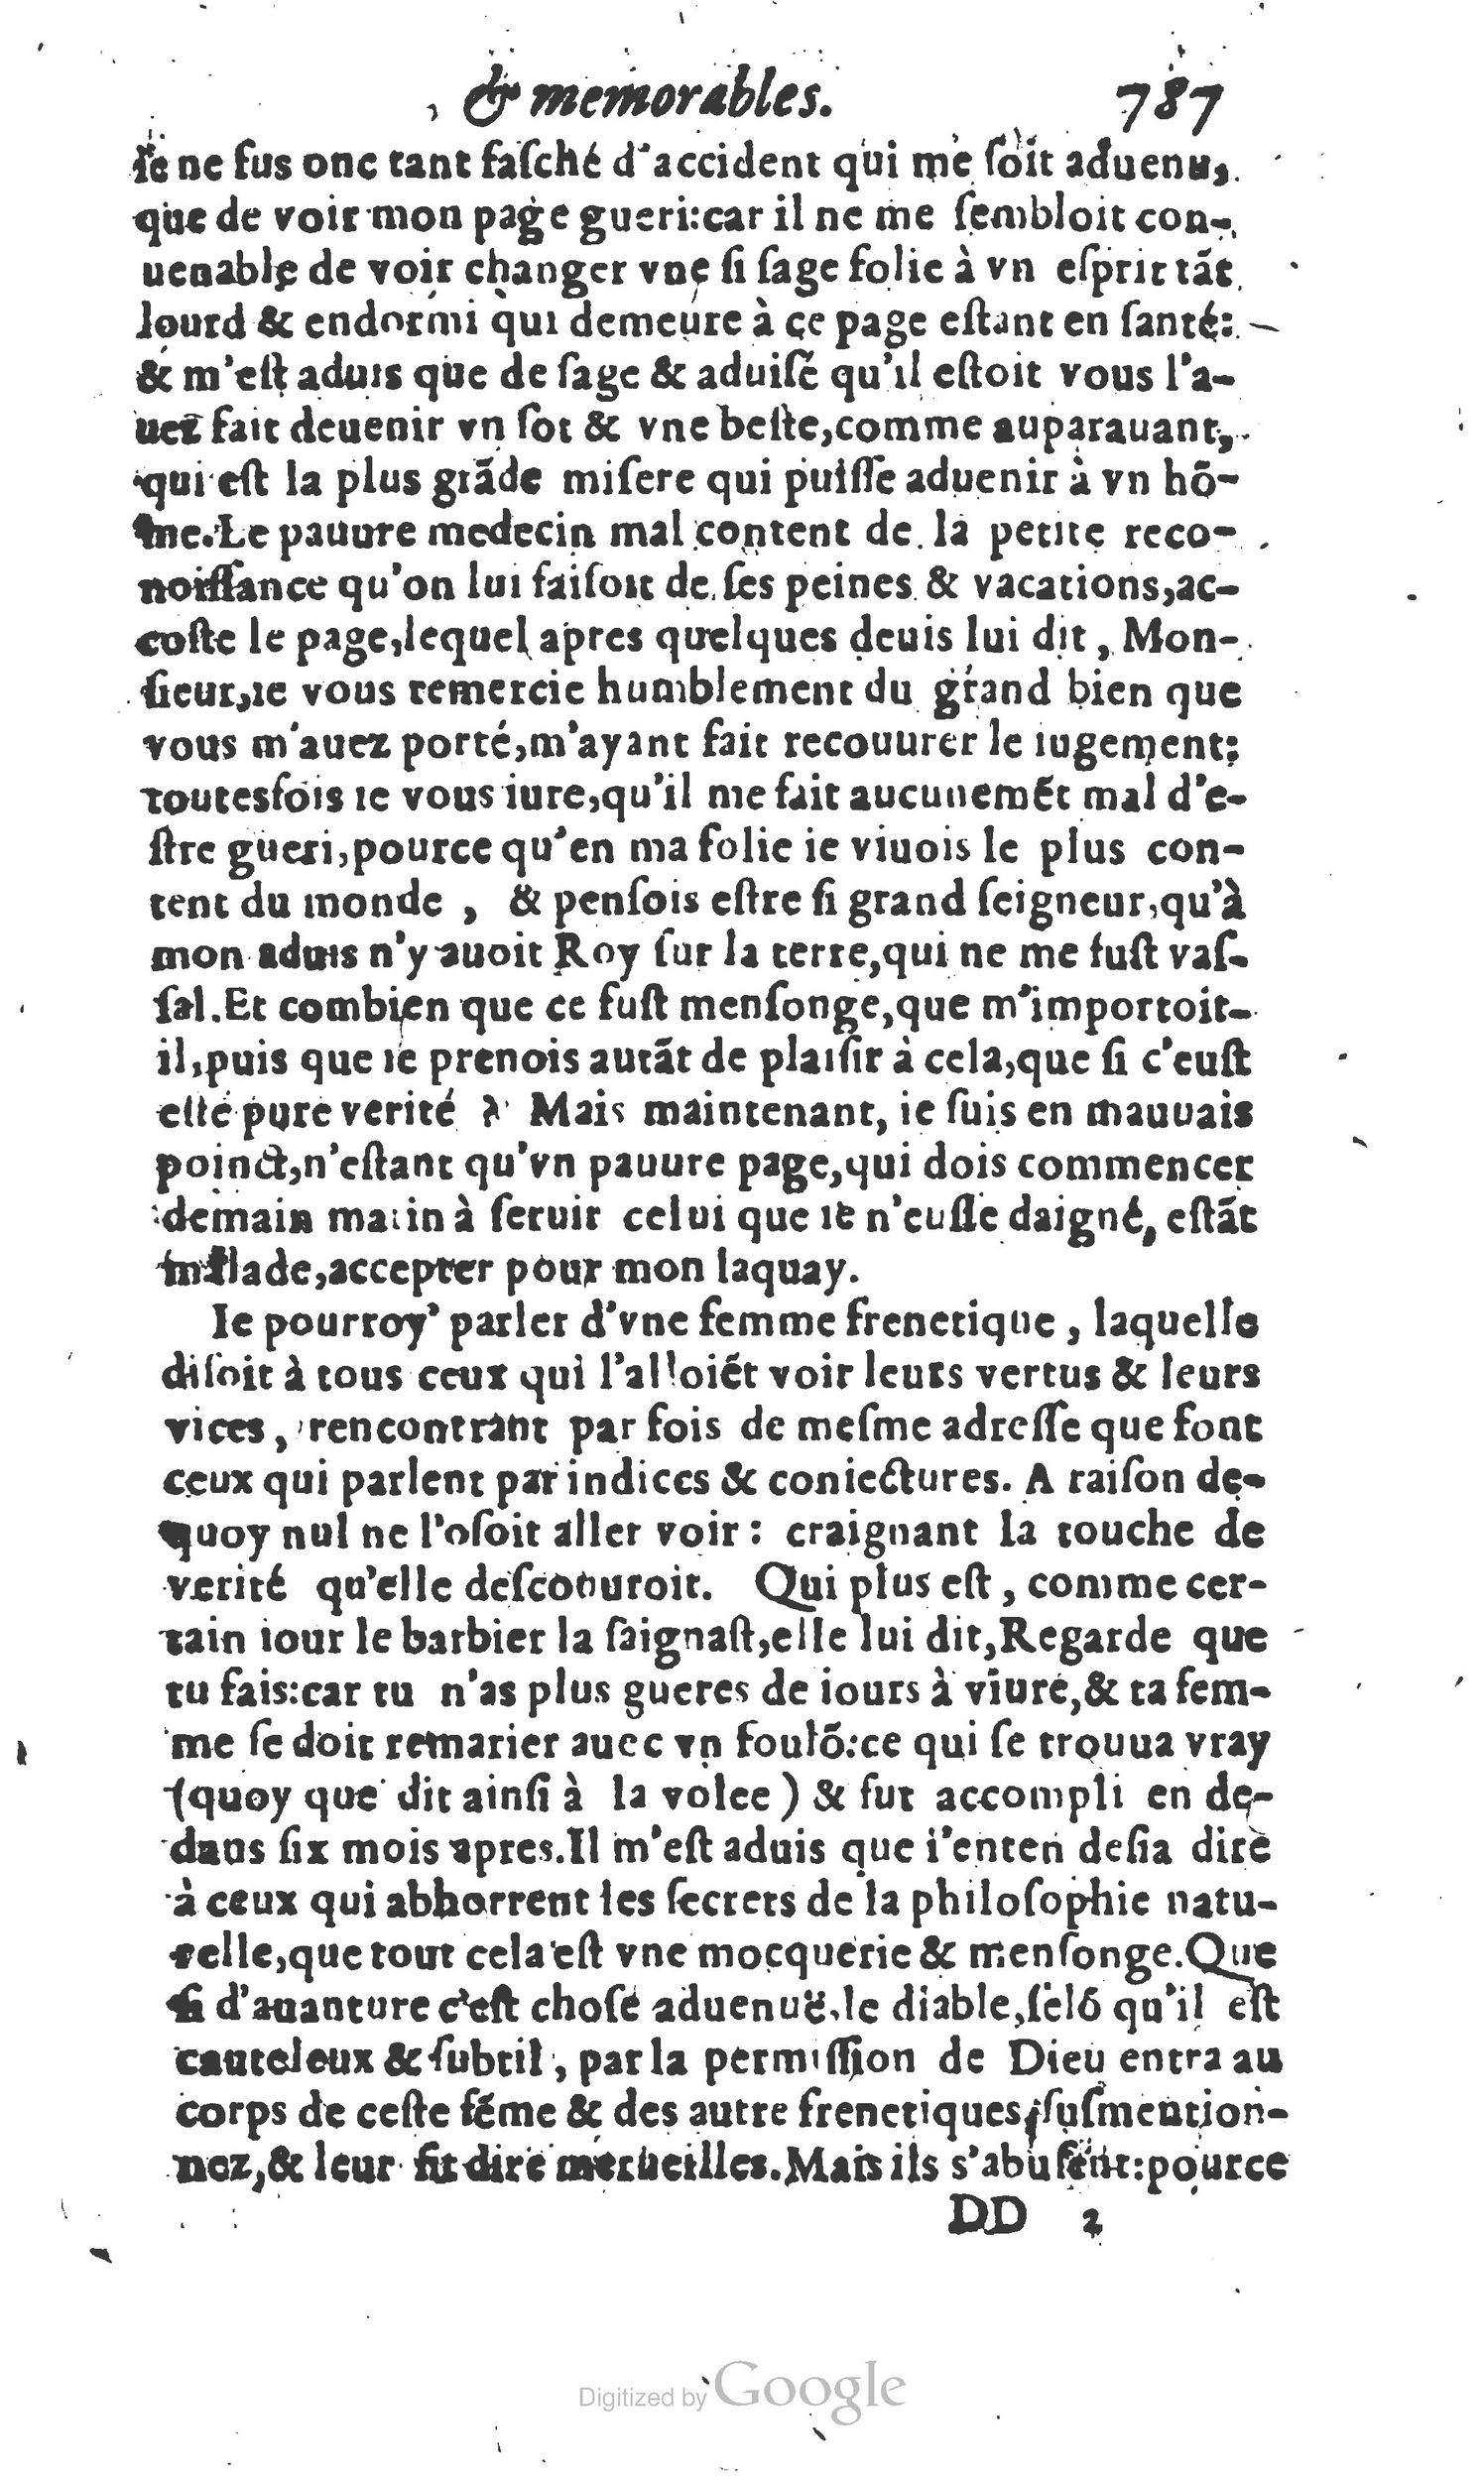 1610 Trésor d’histoires admirables et mémorables de nostre temps Marceau Princeton_Page_0808.jpg